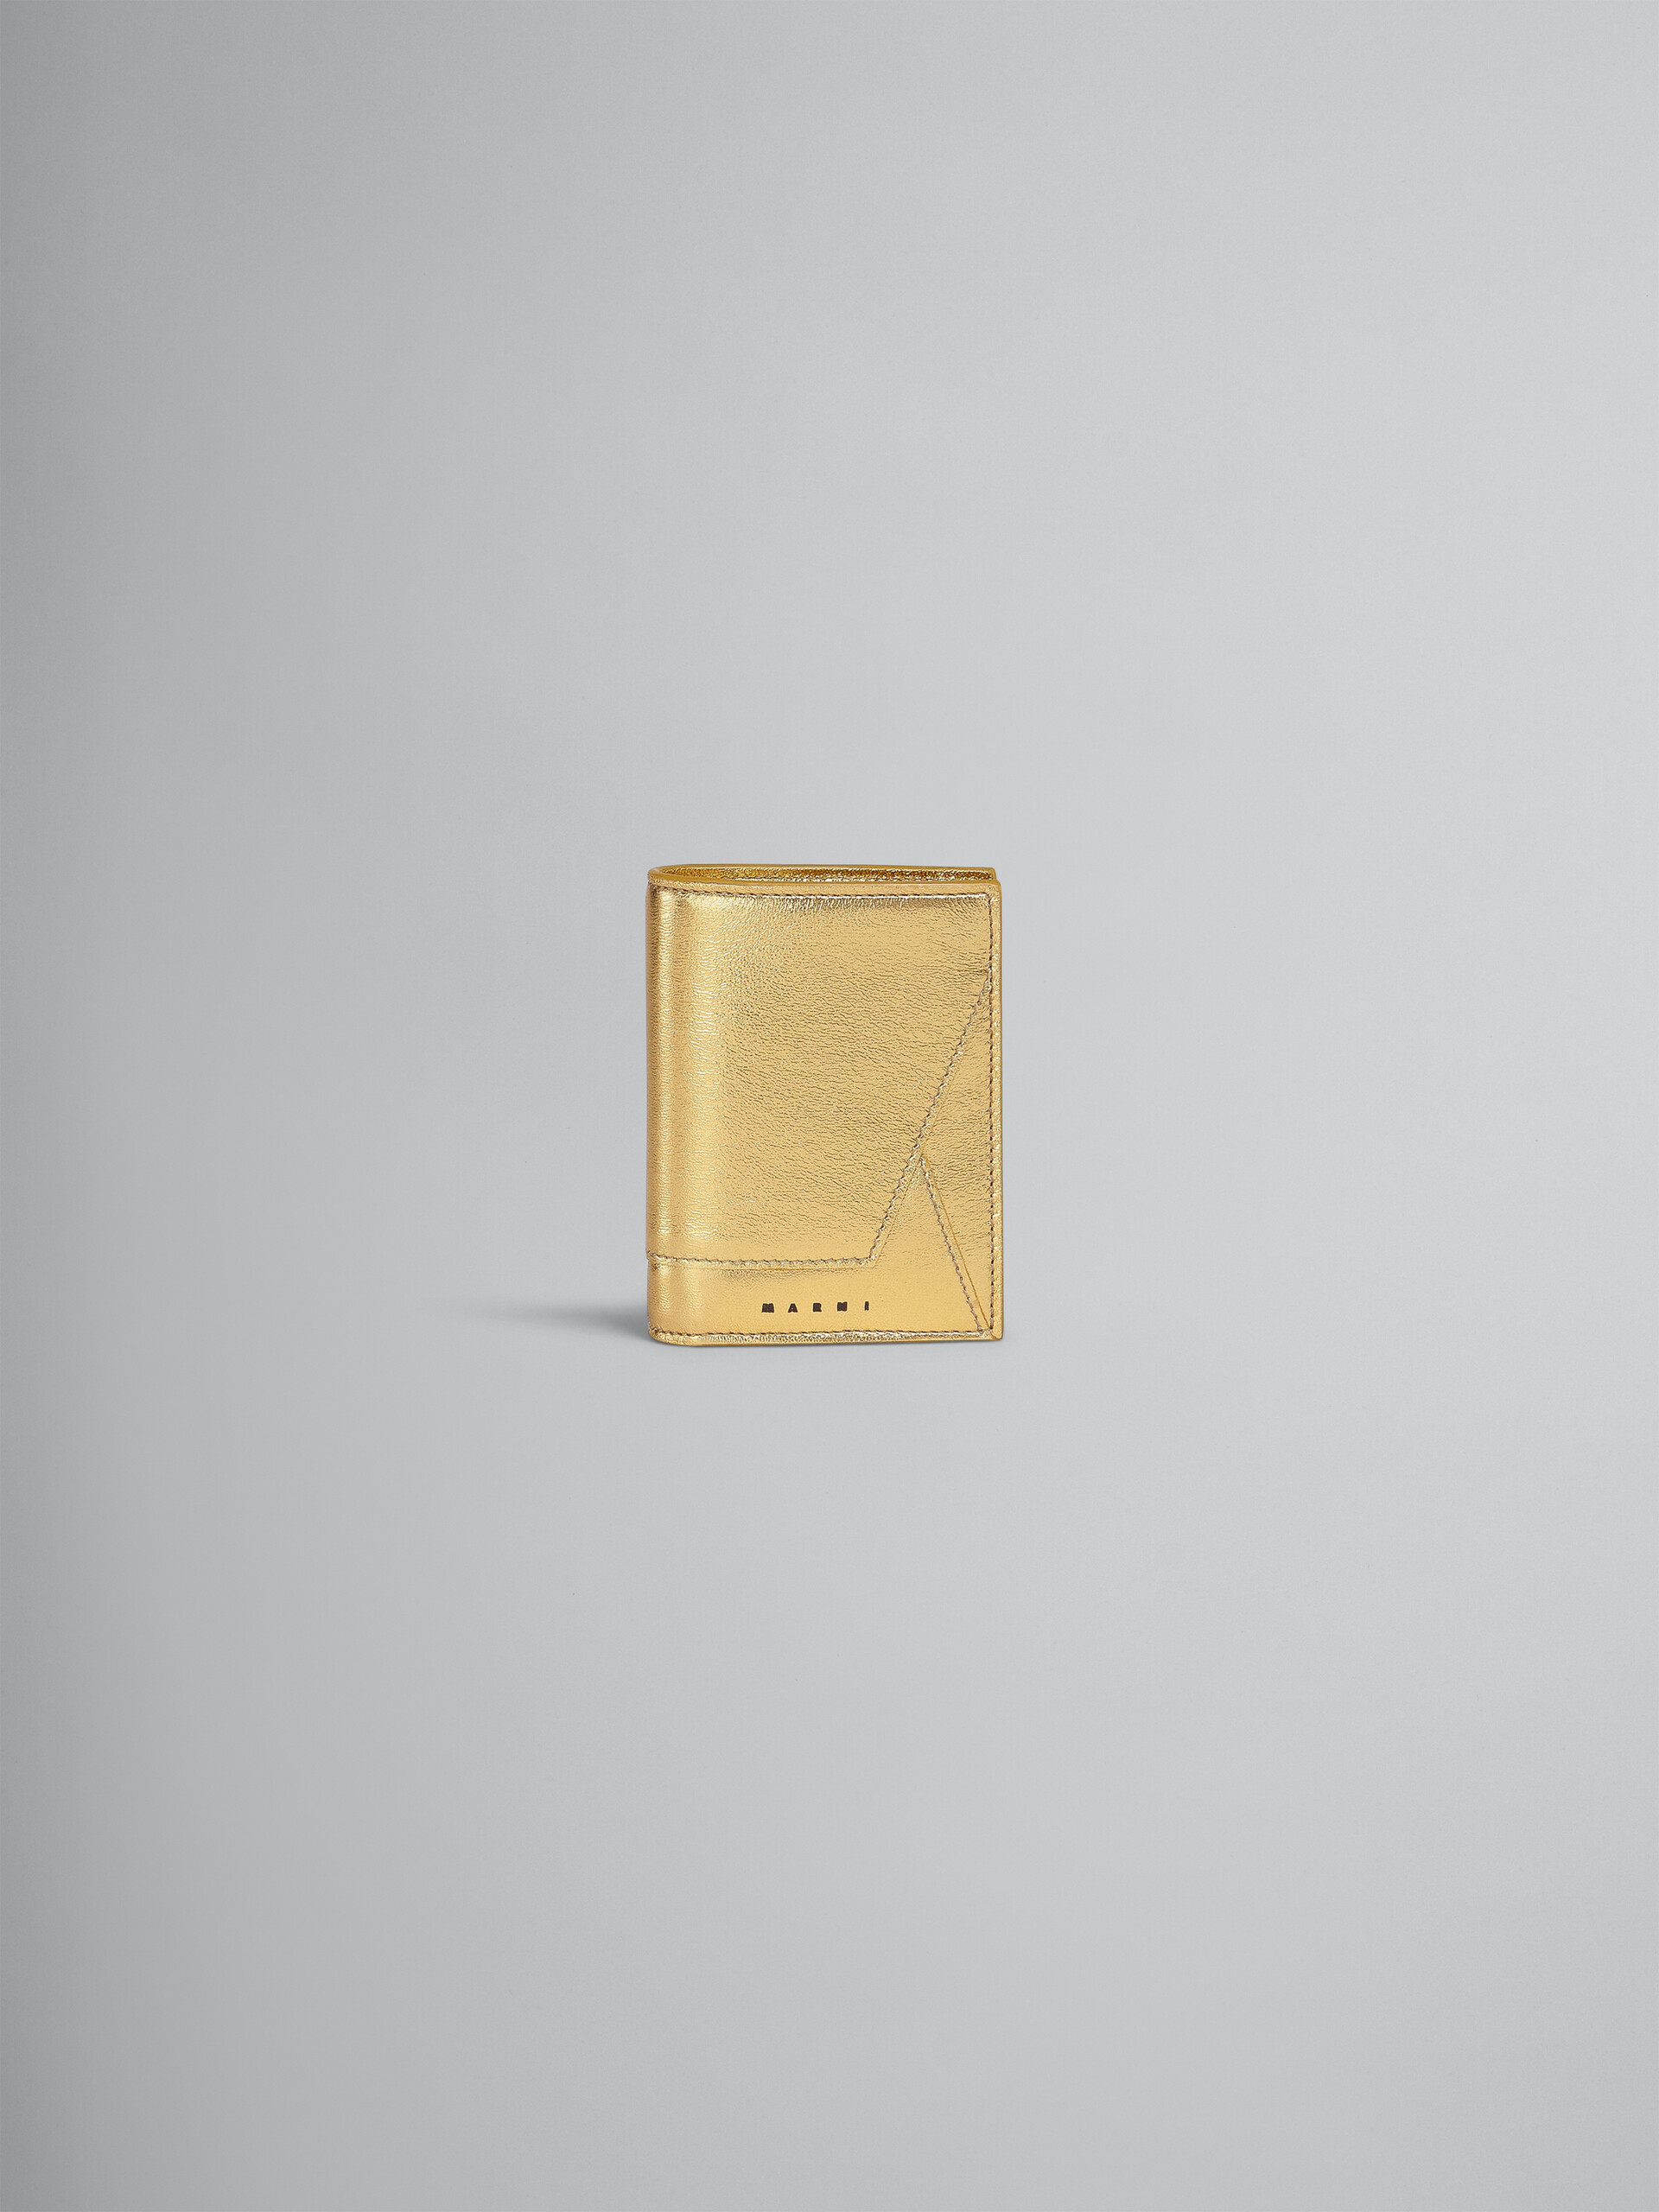 ゴールドメタリック調 ナッパレザー二つ折りウォレット - 財布 - Image 1